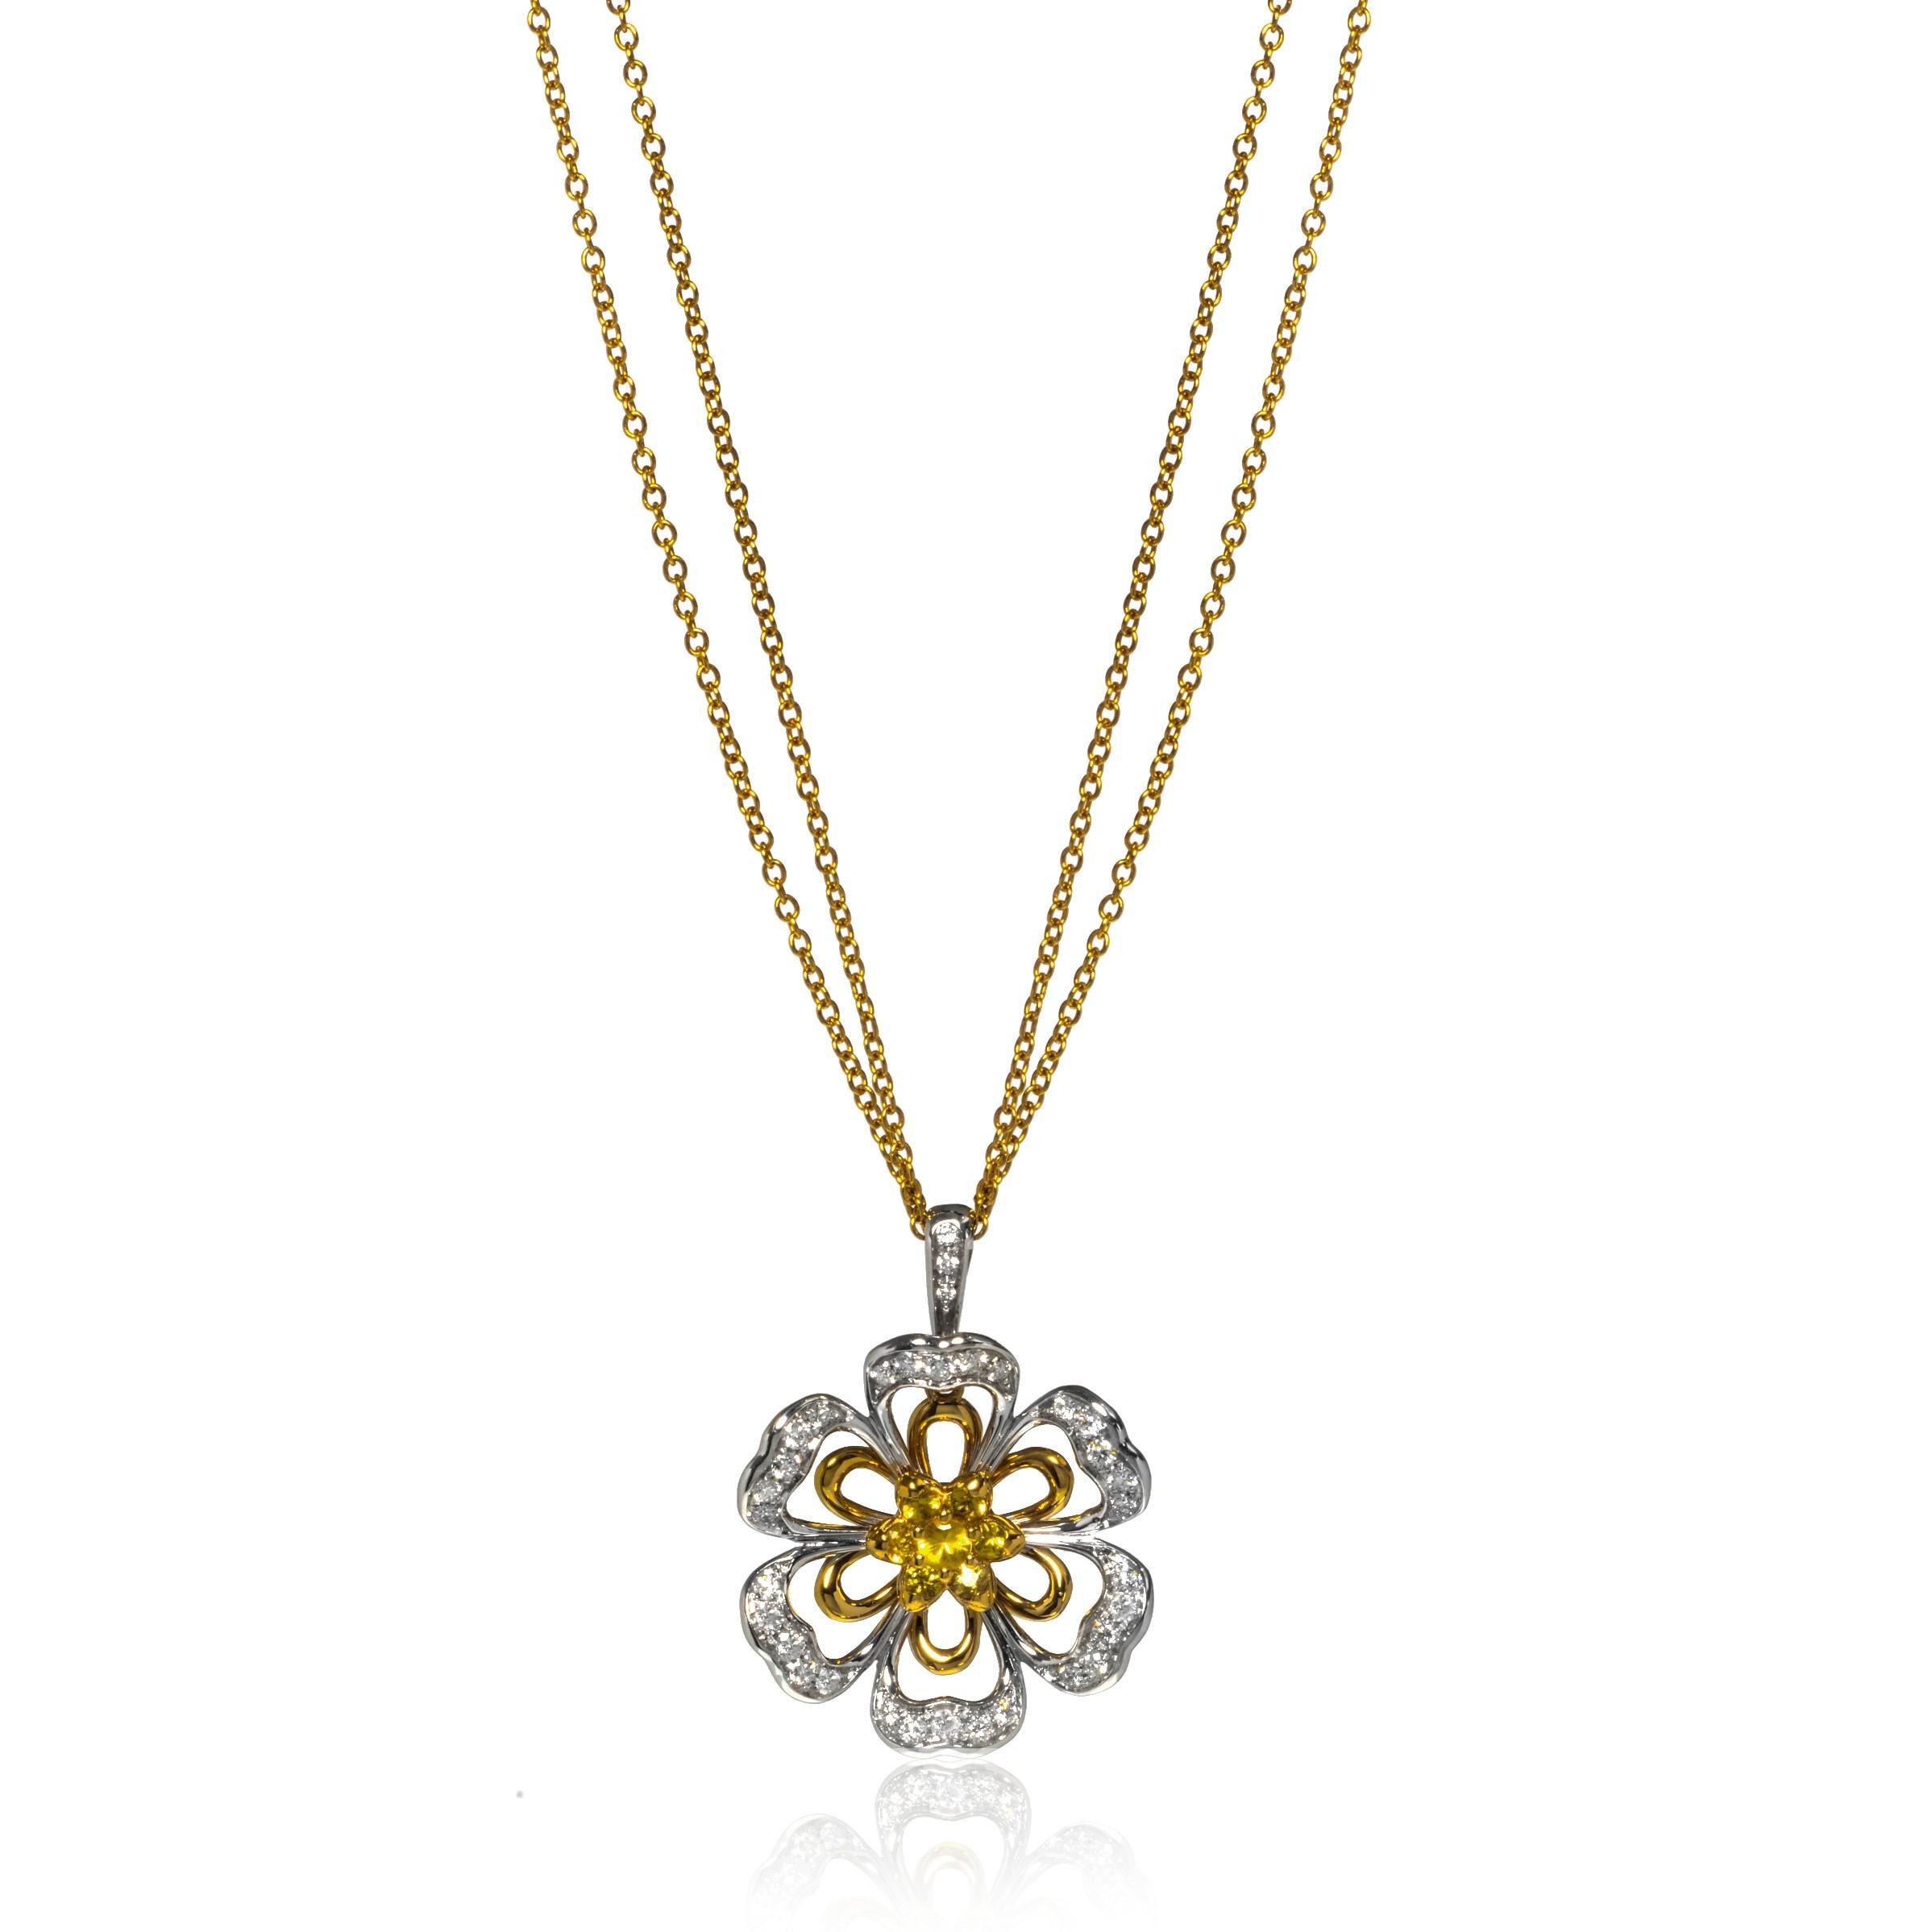 Ce magnifique collier pendentif Luca Carati en or jaune et blanc 18 carats présente un magnifique ensemble de diamants pesant 1,11cttw et de saphirs jaunes pesant 0,59cttw en forme de fleur. Une monture florale en or blanc 18k superposée à la